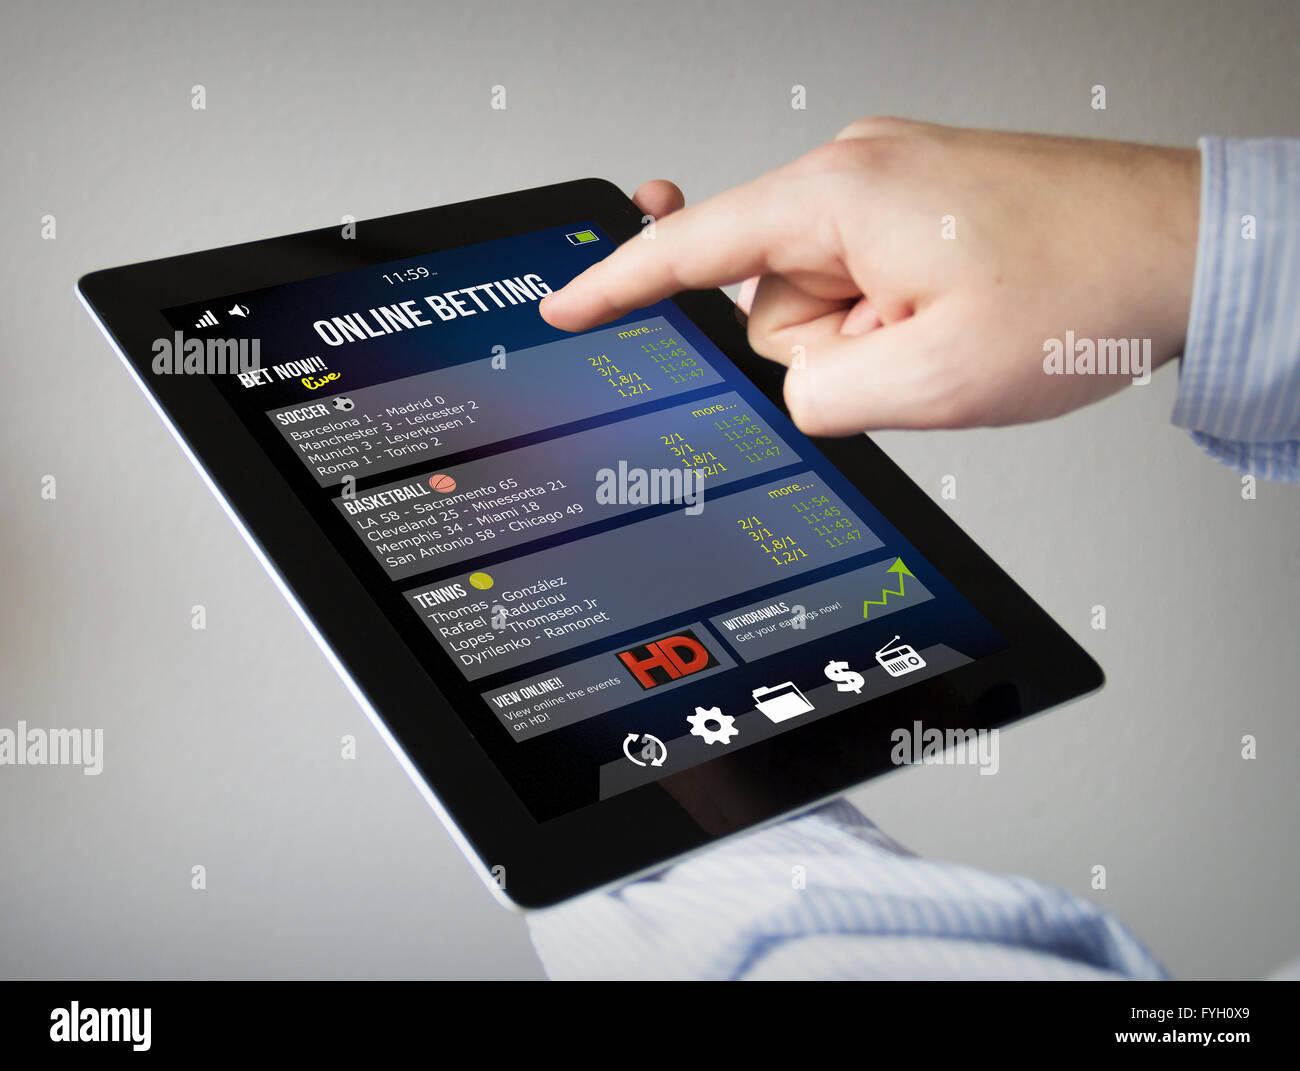 Nouvelles technologies concept : les mains à l'écran tactile Tablet paris en ligne Banque D'Images